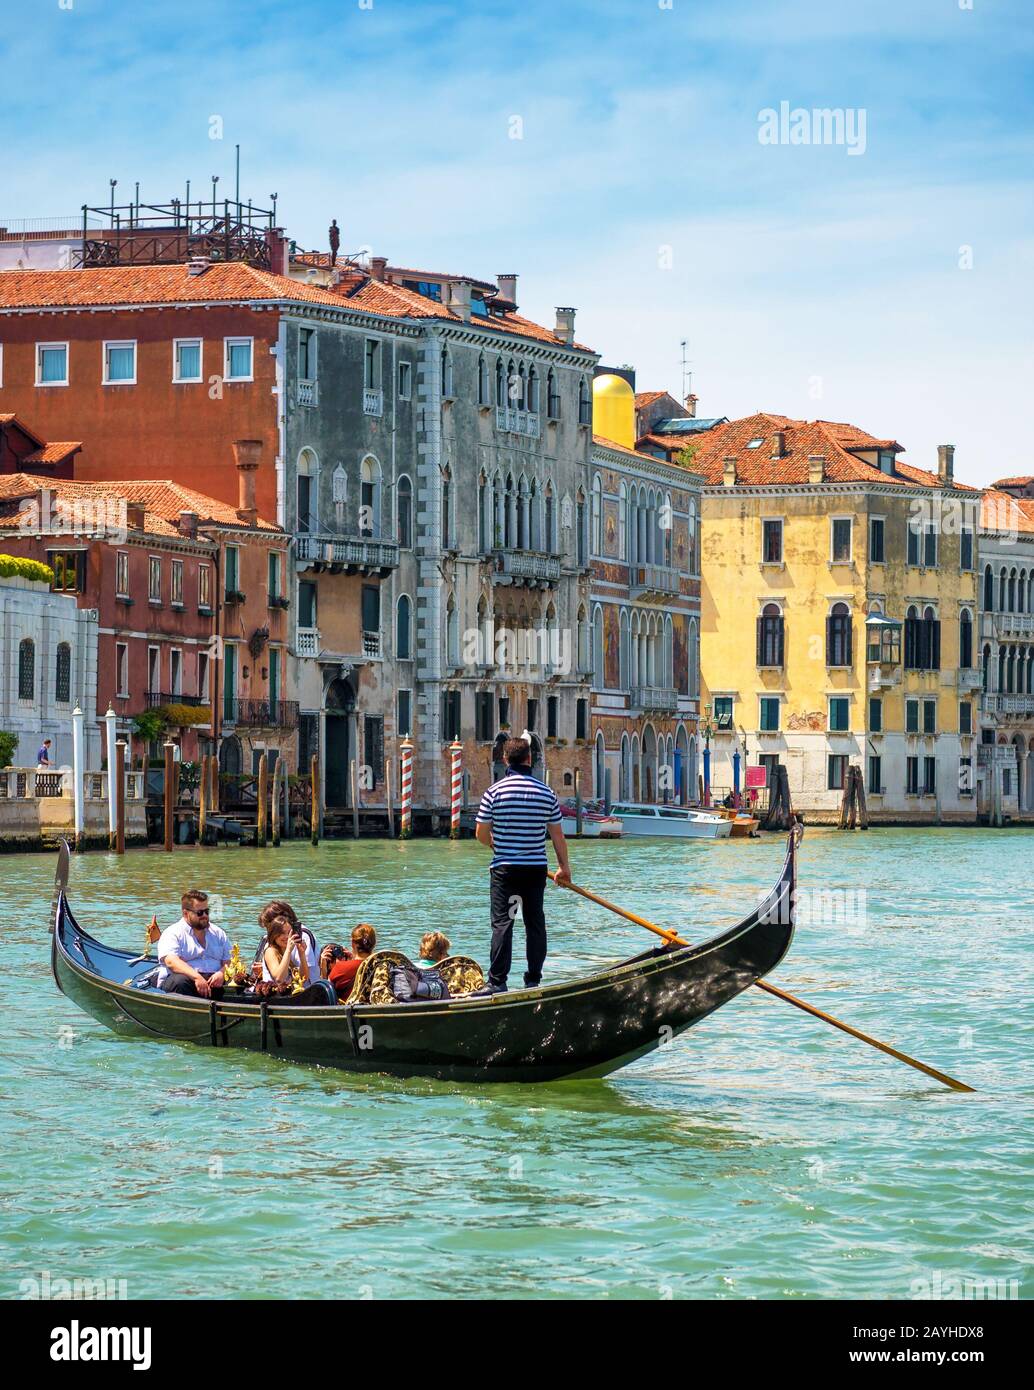 Venedig, Italien - 19. Mai 2017: Gondeln mit Touristen fahren entlang des Canal Grande. Die Gondel ist der attraktivste Touristentransport Venedigs. 16 Stockfoto